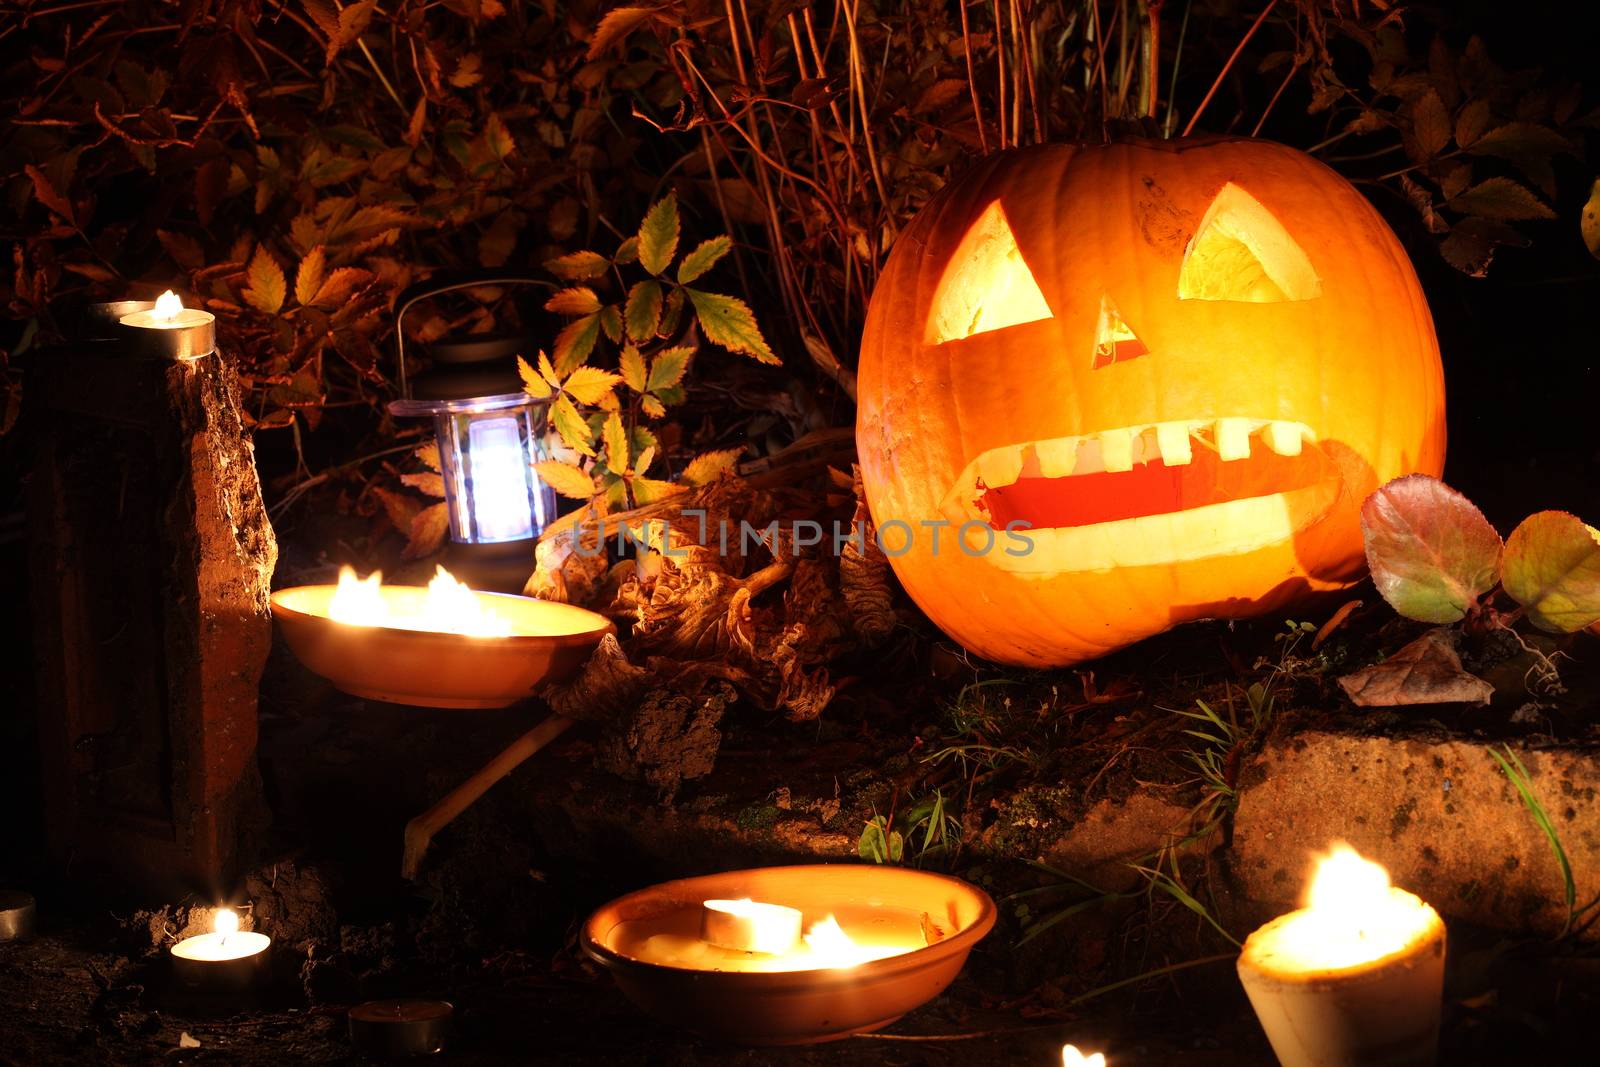 Illuminated spooky Halloween Jack O' Lantern pumpkin lantern at night in October stock photo